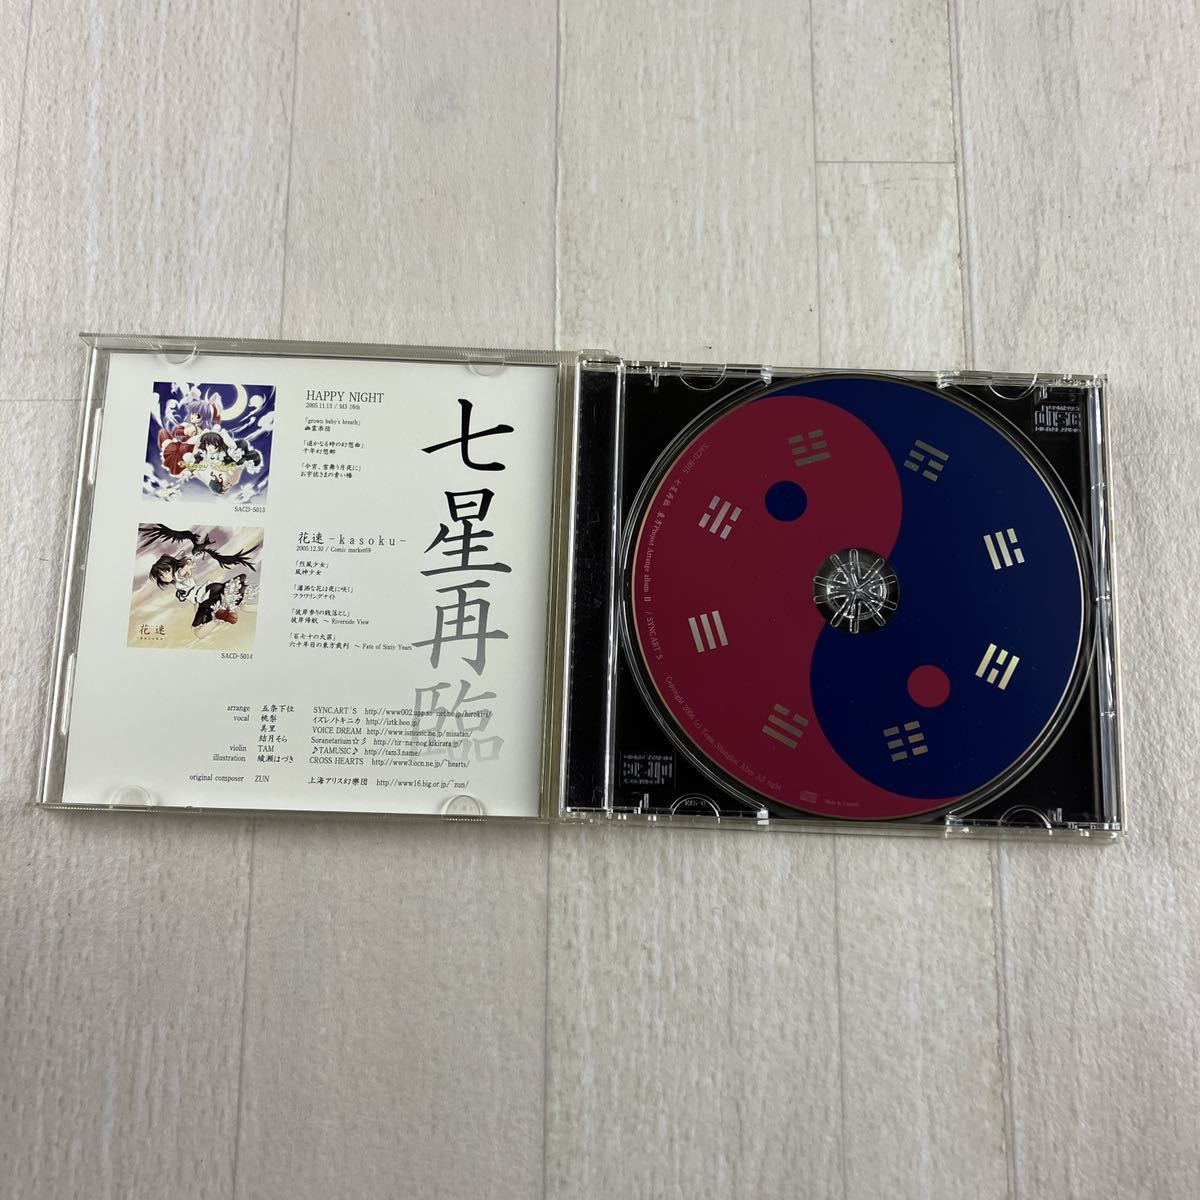 SC1 七星再臨 東方Project Arrange album Vol.II CD_画像2